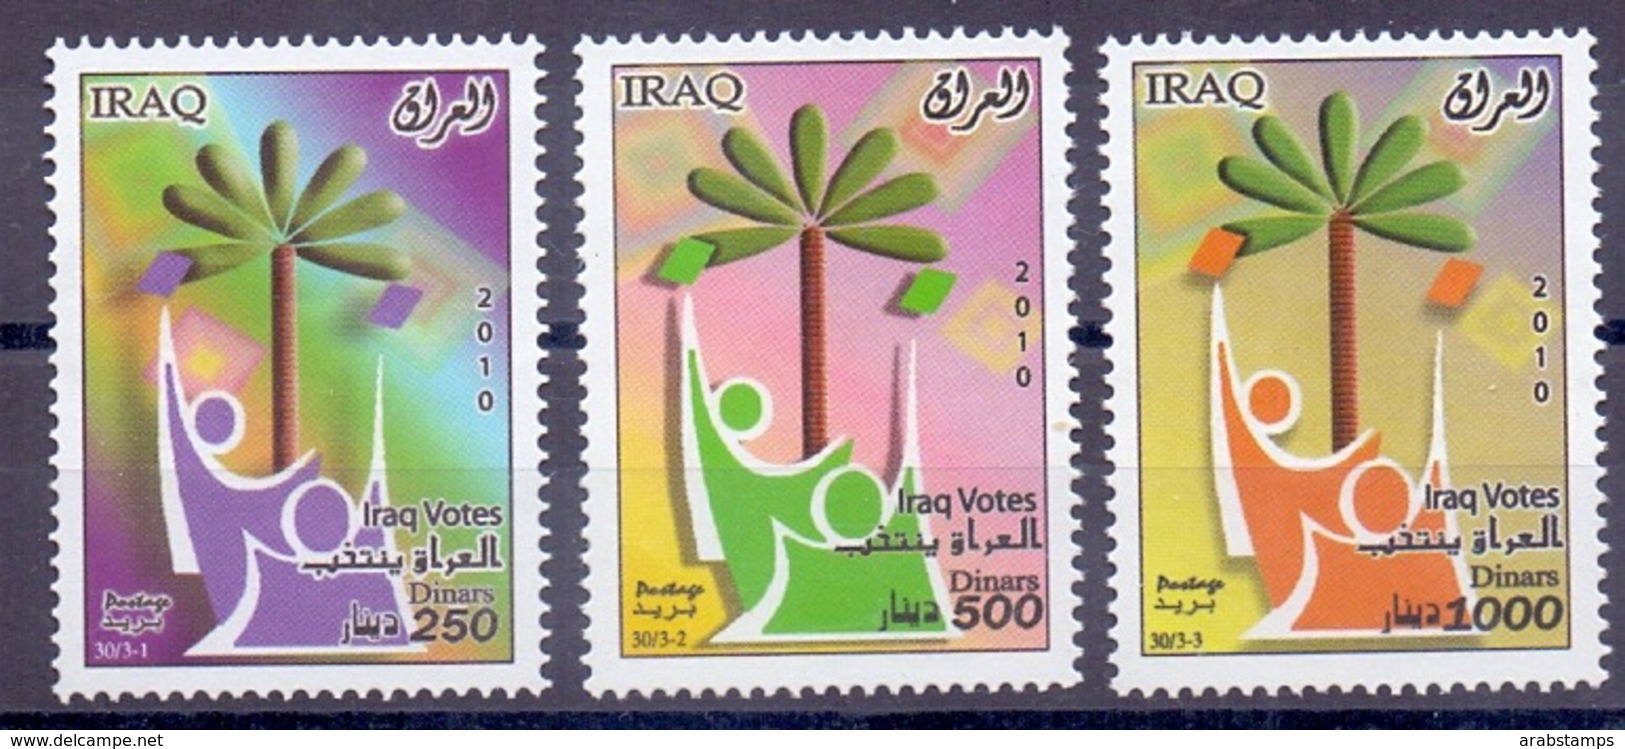 2010 IRAQ Complete Set 3 Values MNH  S.G. No. 2280 A-2280 C - Iraq